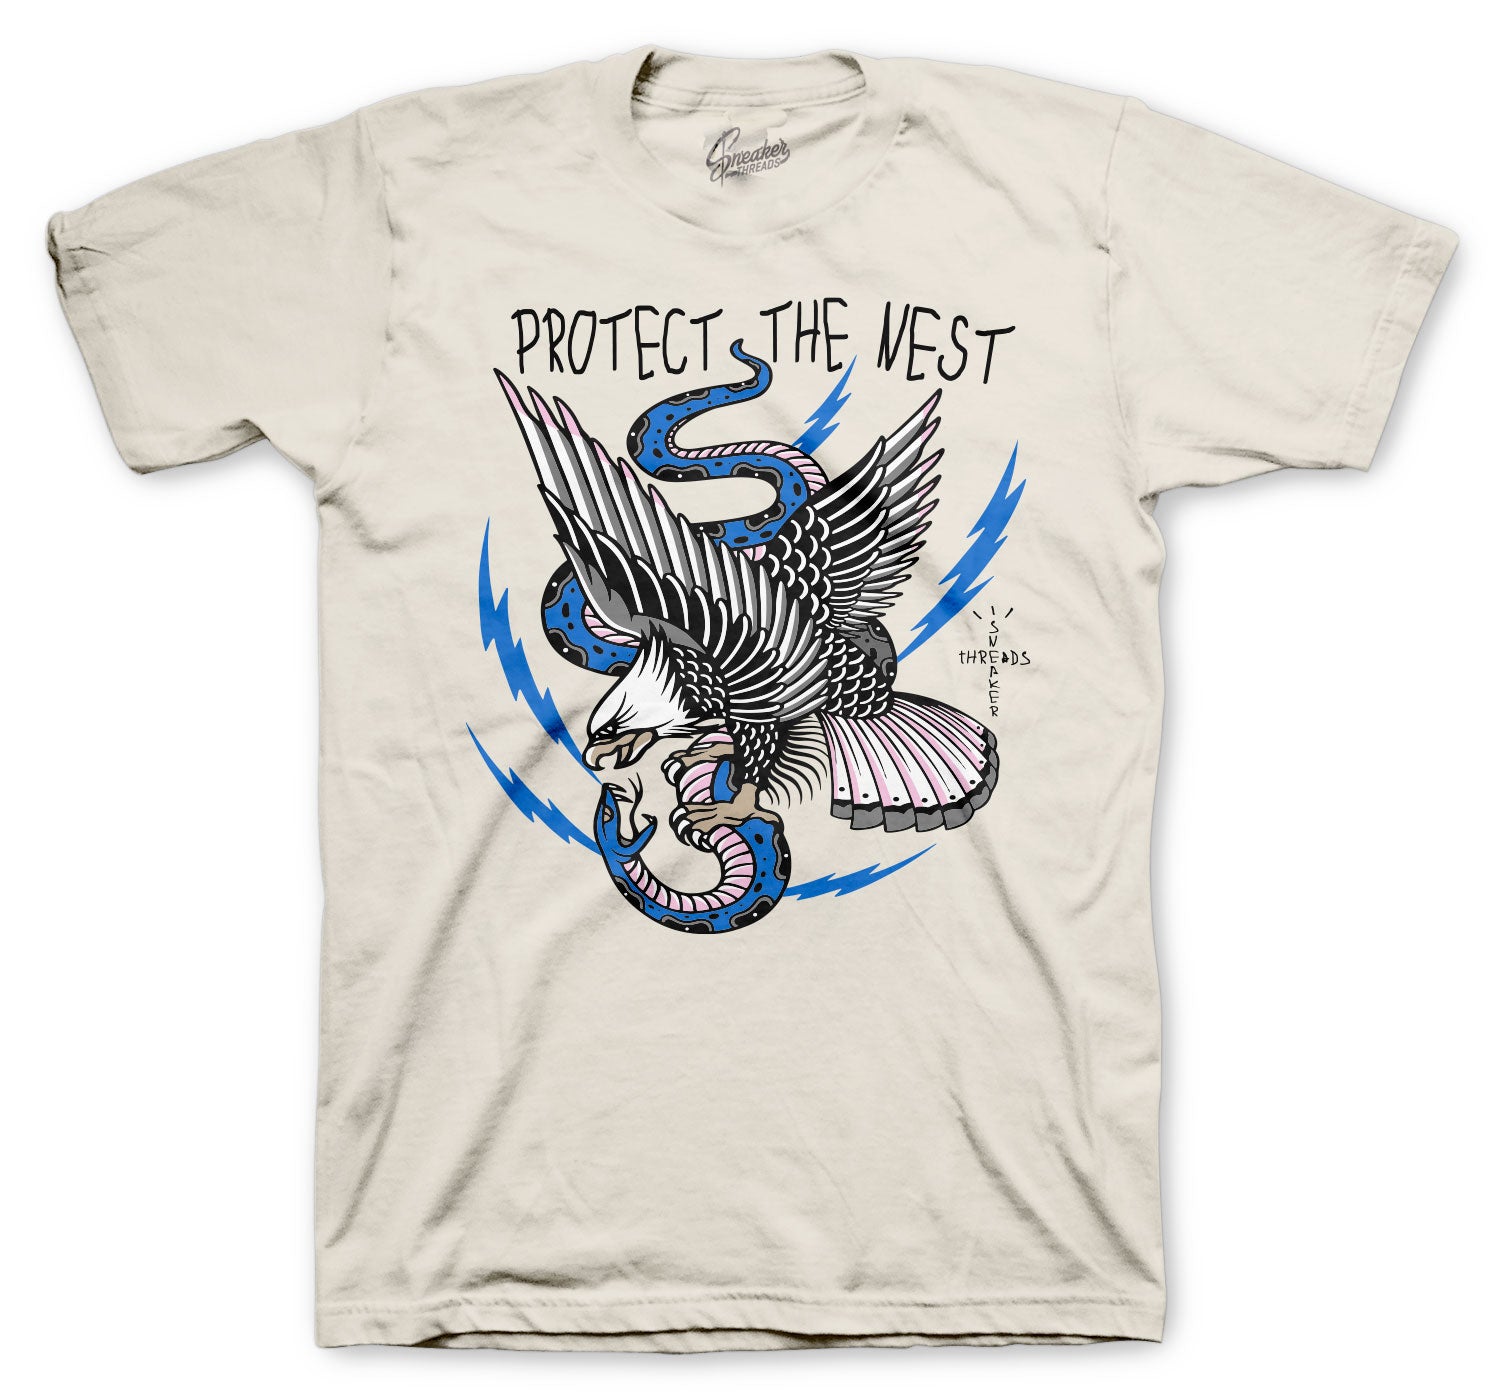 Retro 1 Travis Scott Fragment Shirt - Protect The Nest - Natural